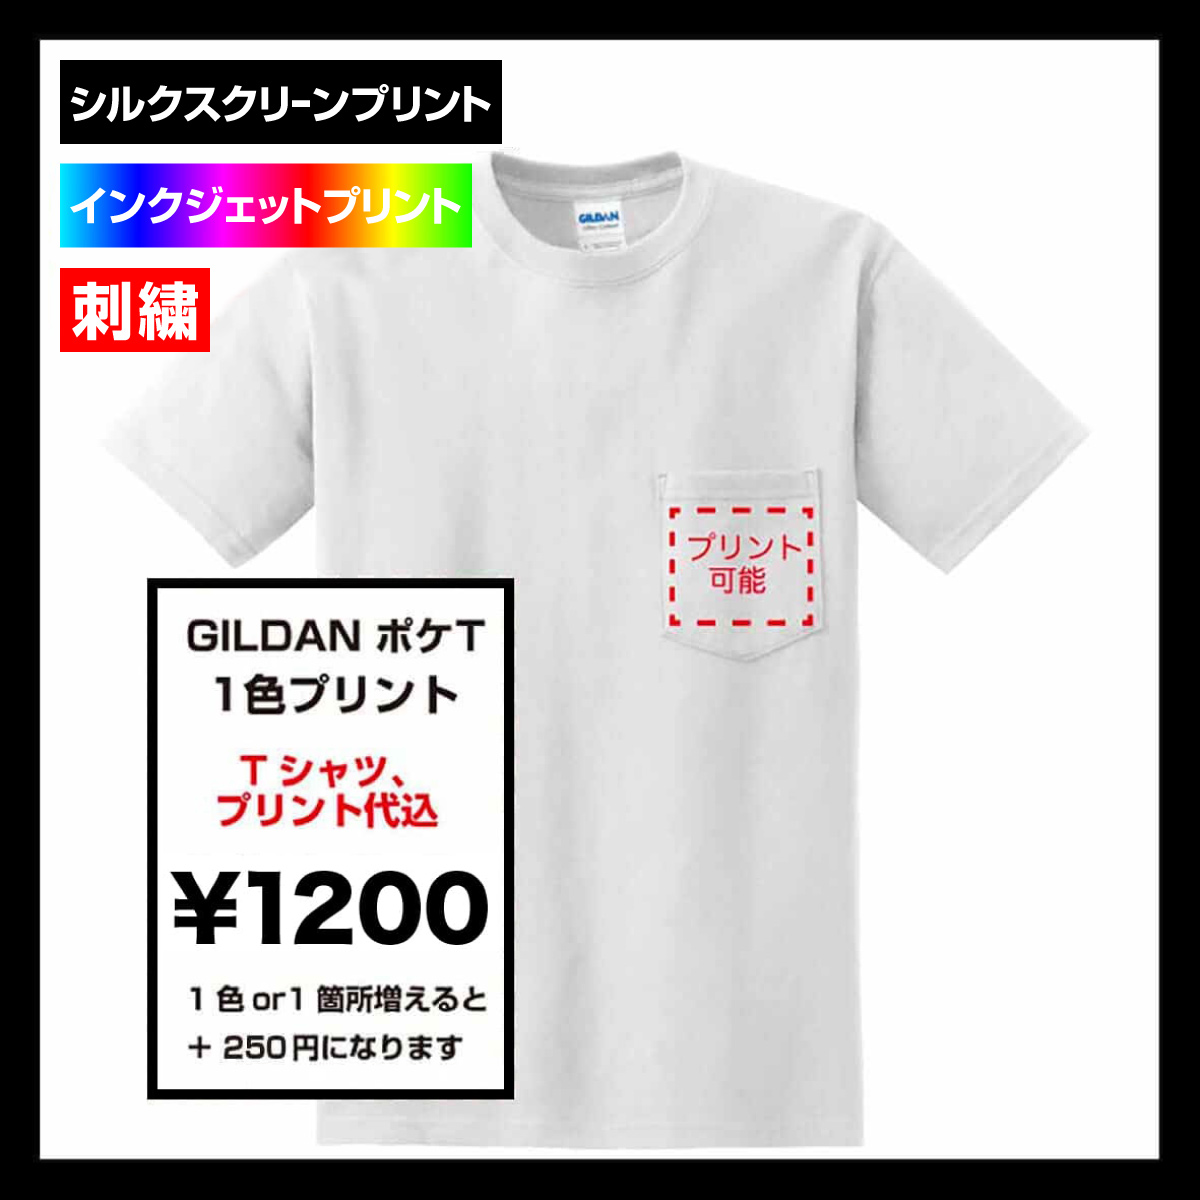 GILDAN ギルダン 6.0 oz ウルトラコットンポケットTシャツ (品番2300)